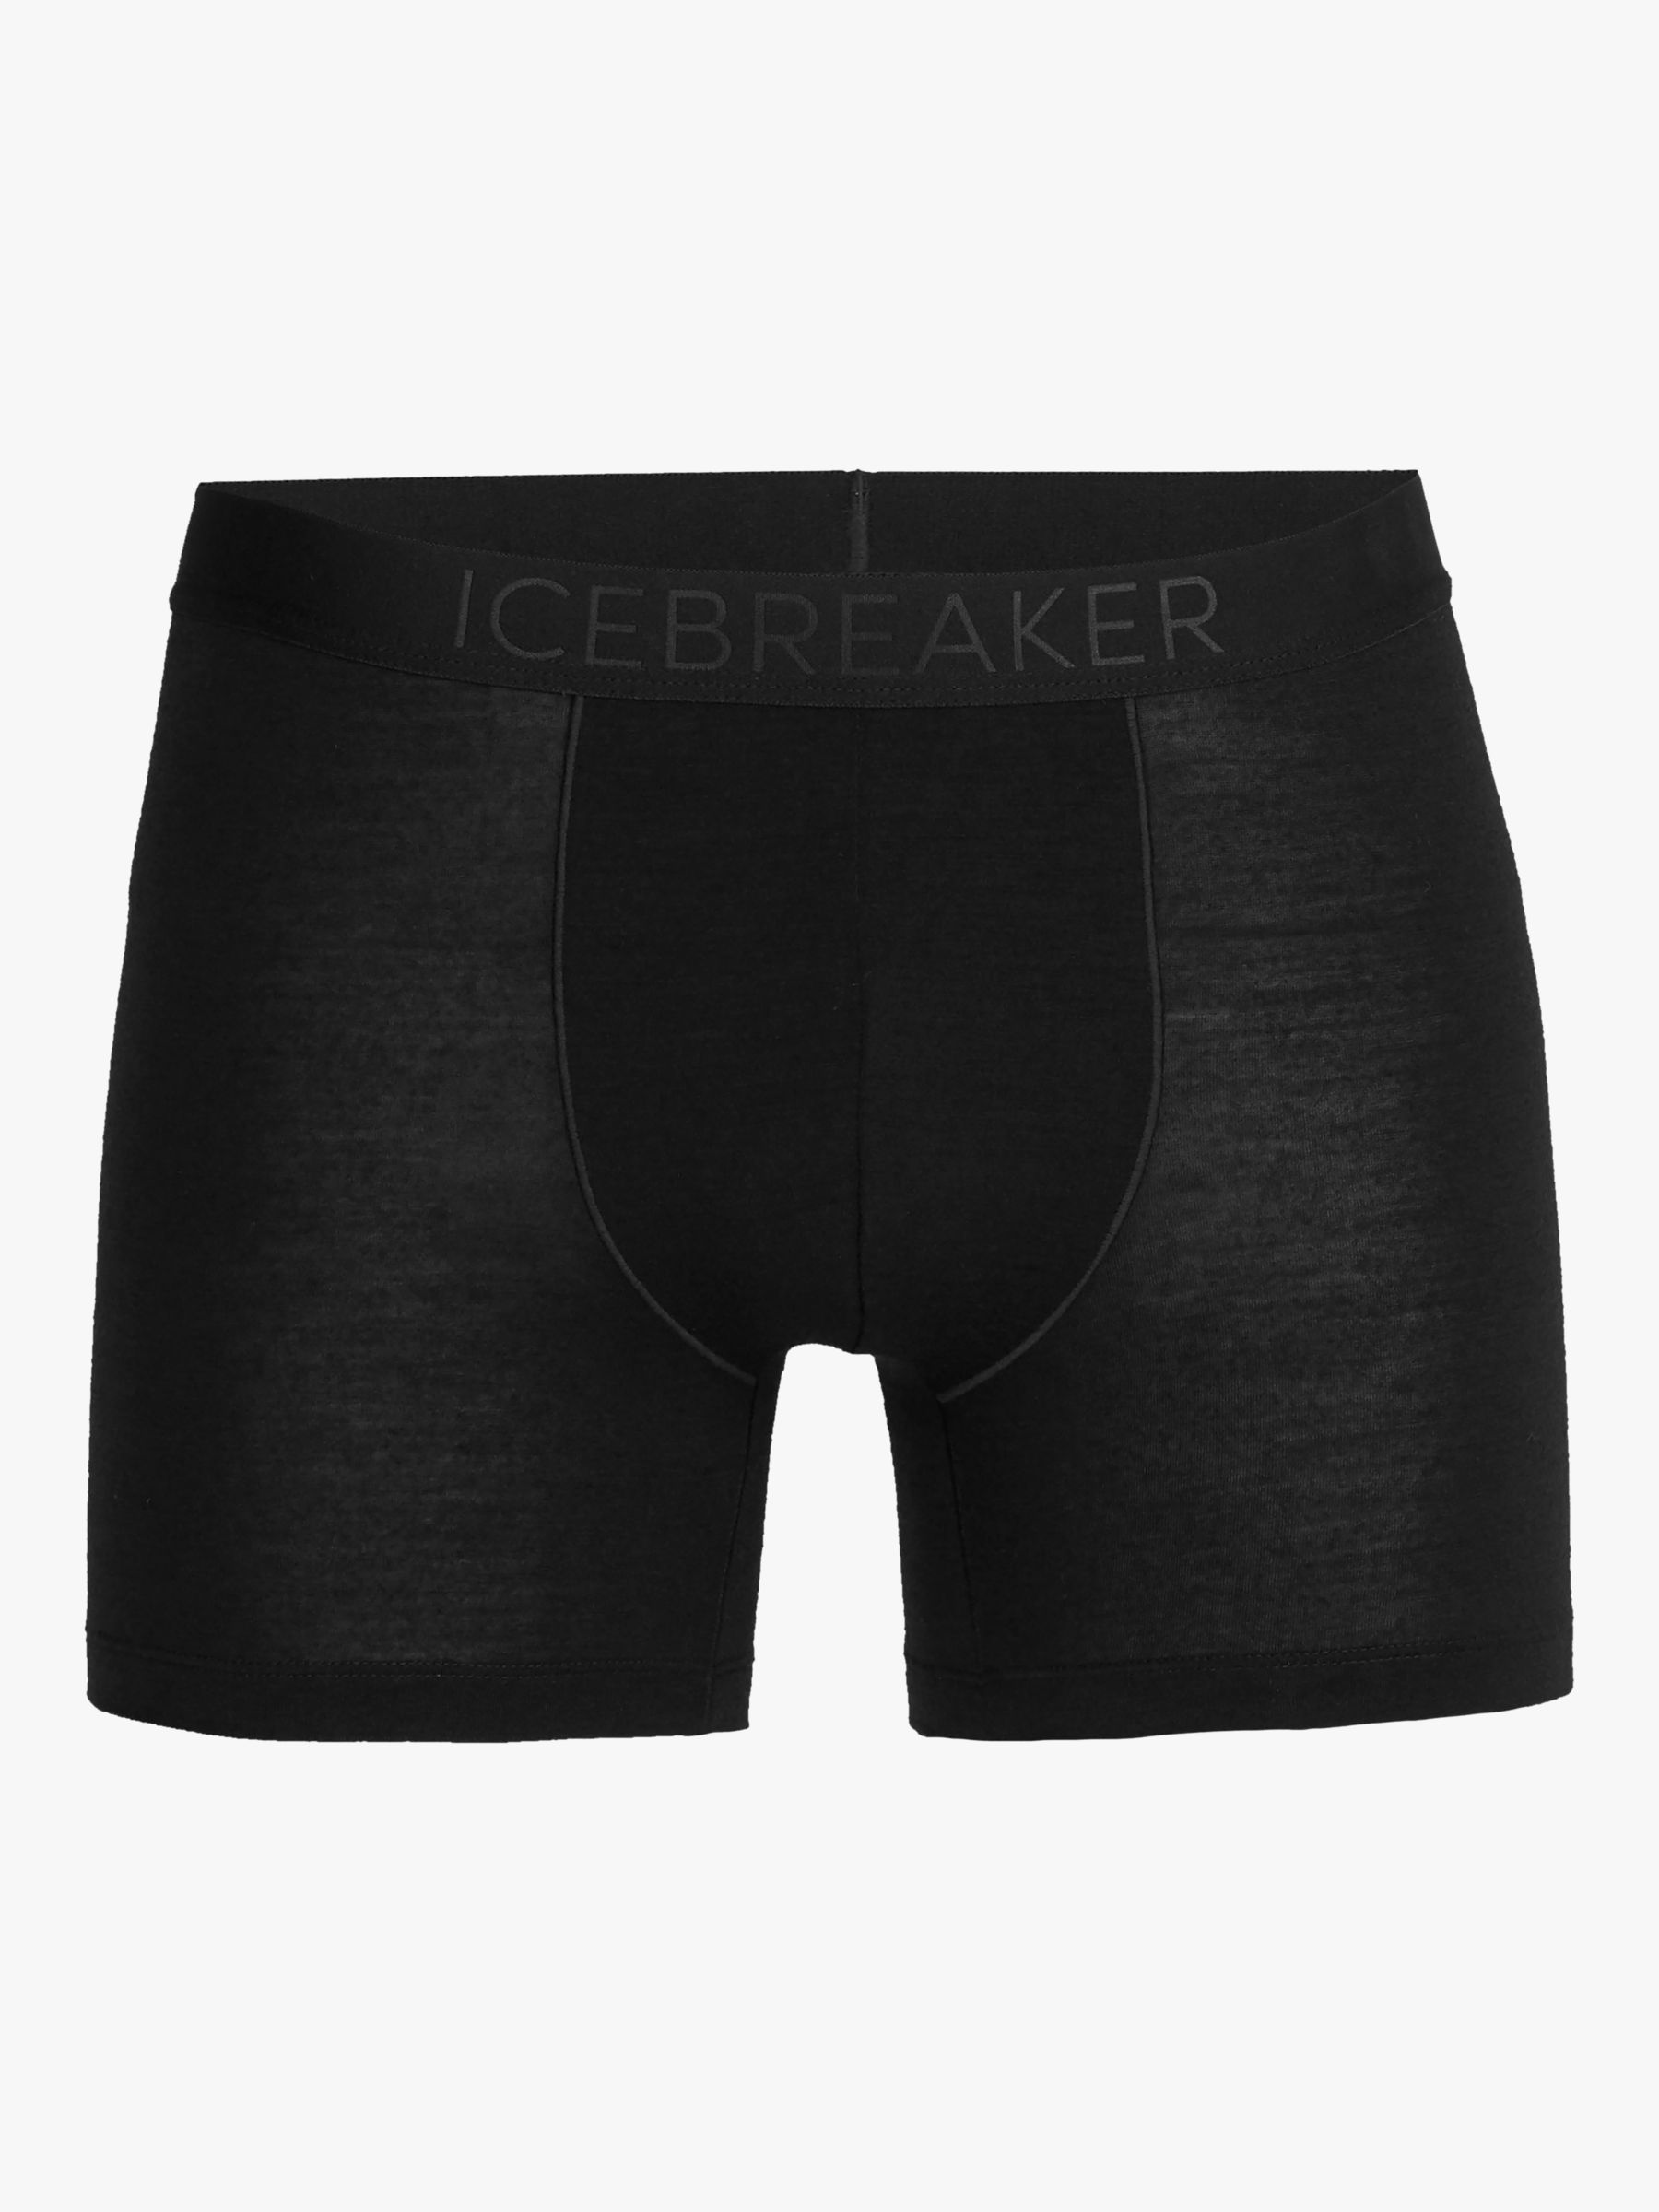 Icebreaker Merino Wool Blend Slim Fit Boxers, Black, S